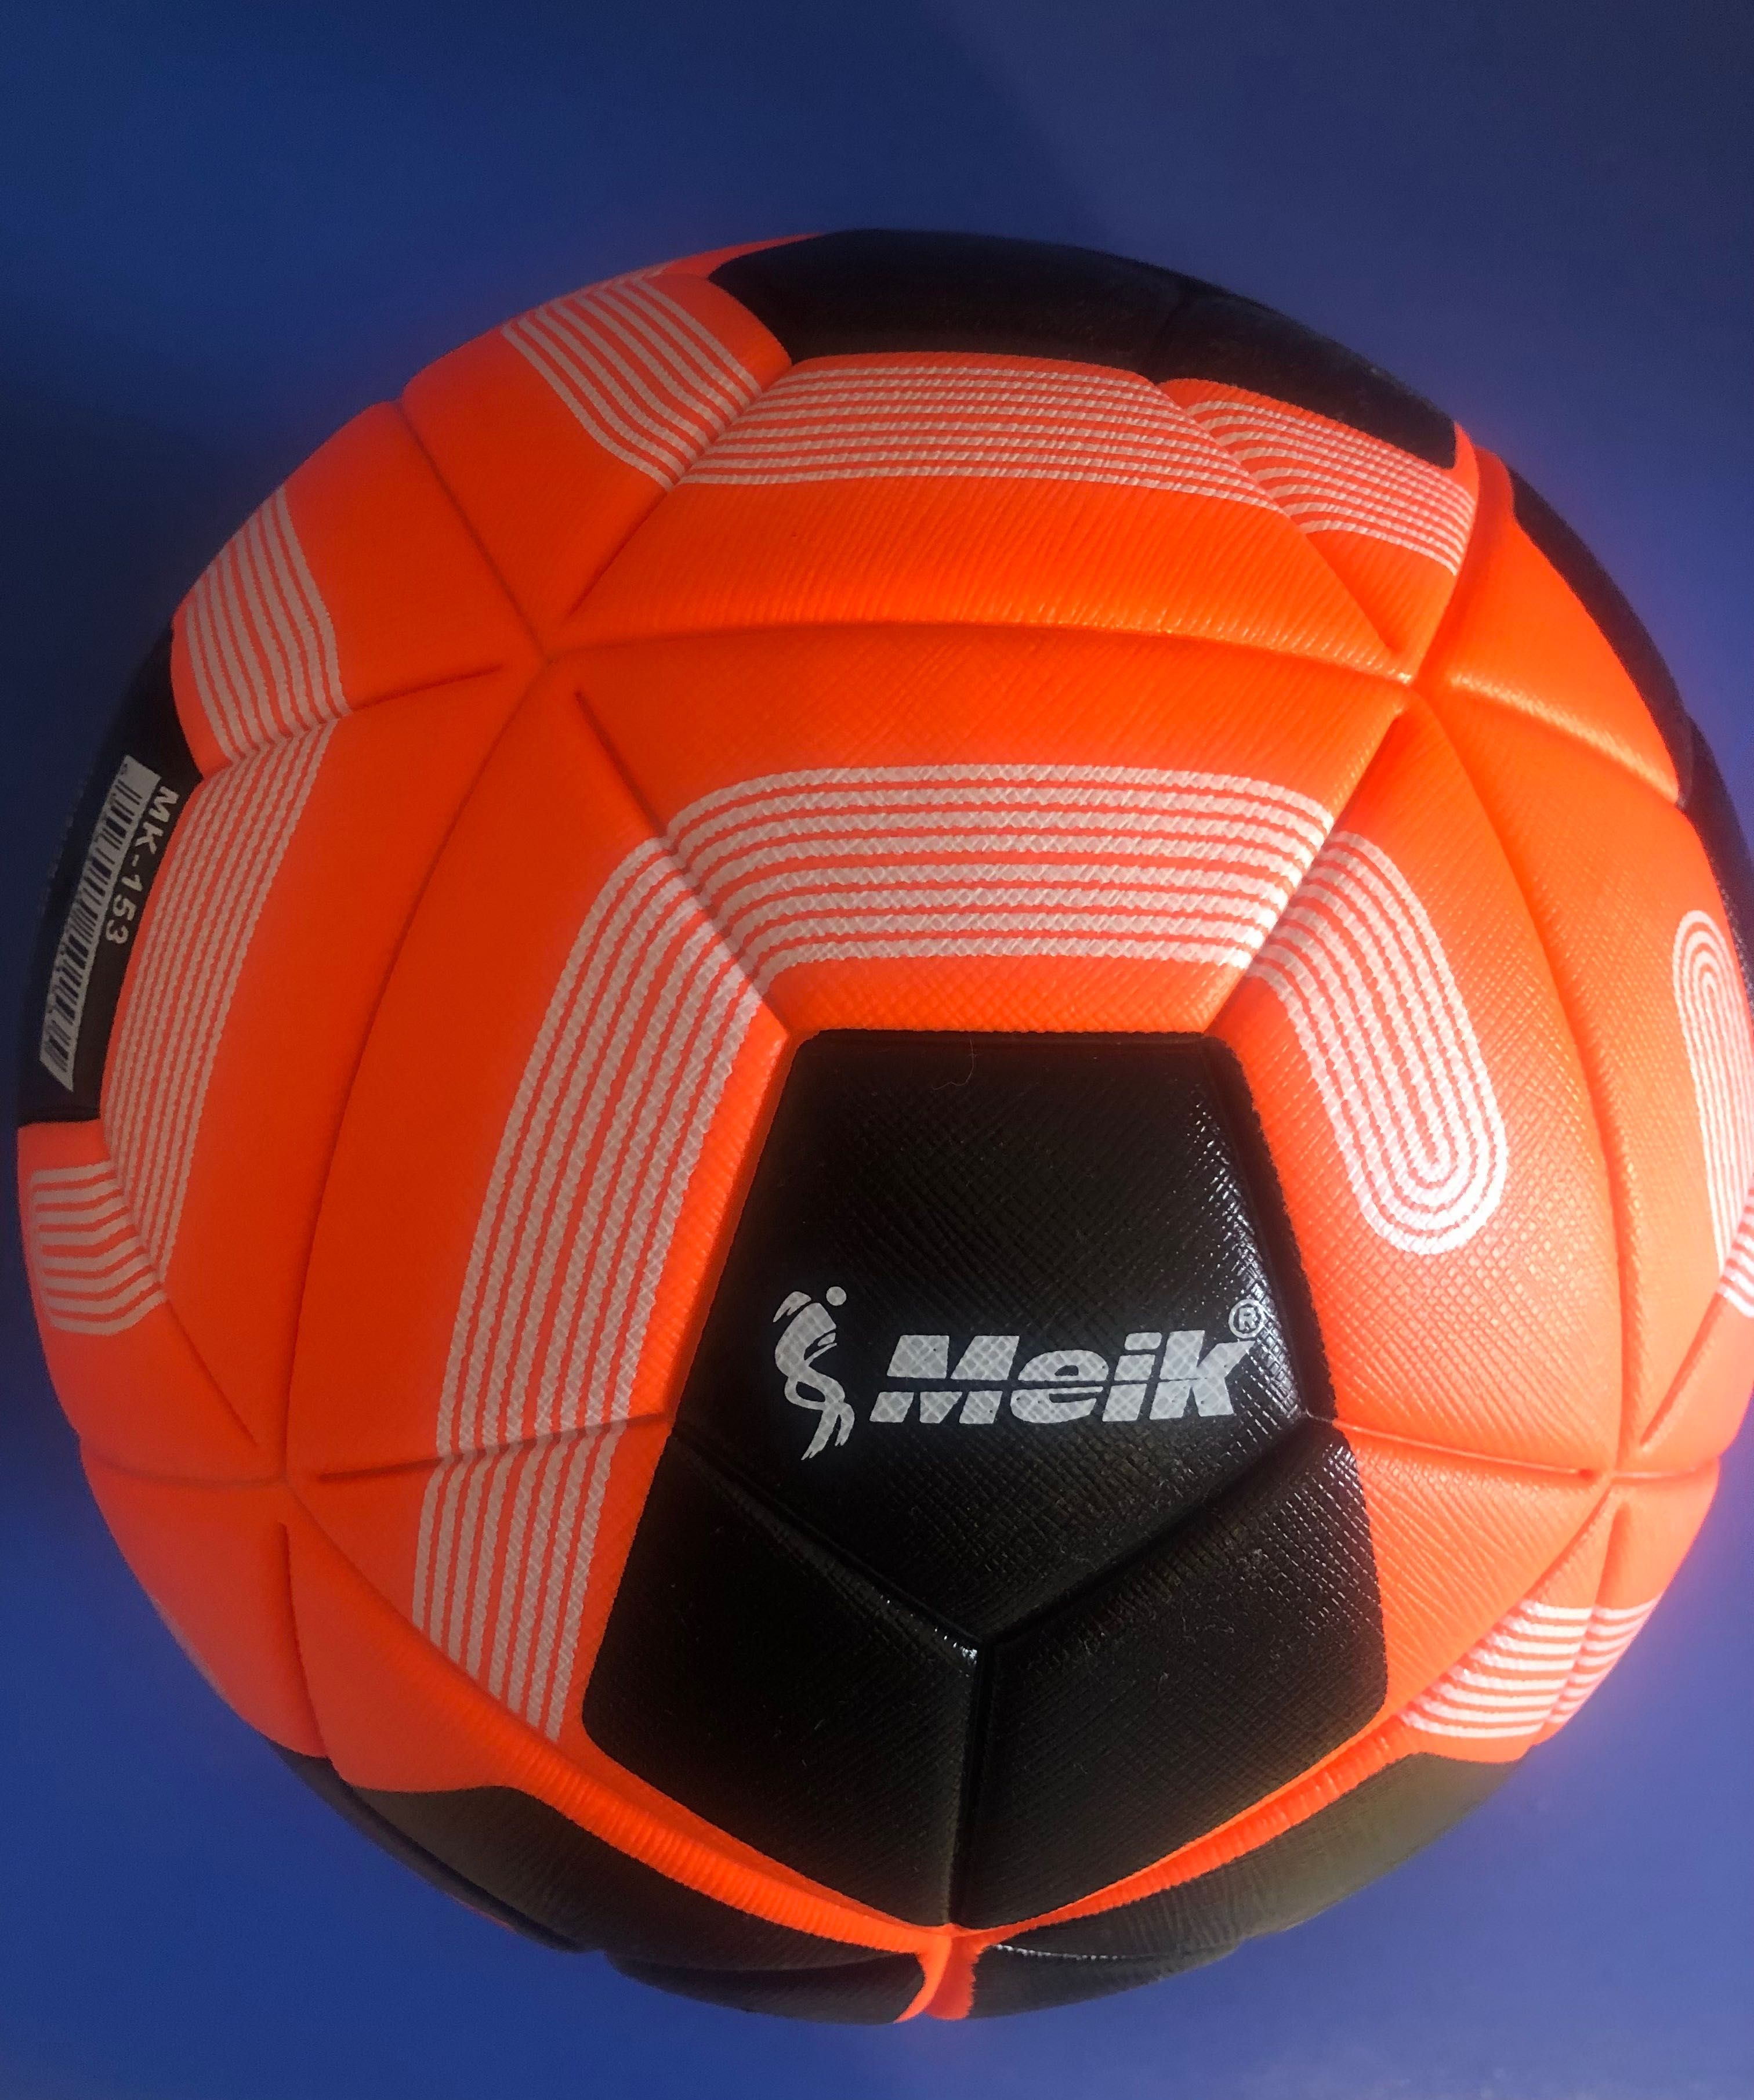 М'яч футбольний  PL PTCH термосклейка Розмір 5 для асфальту